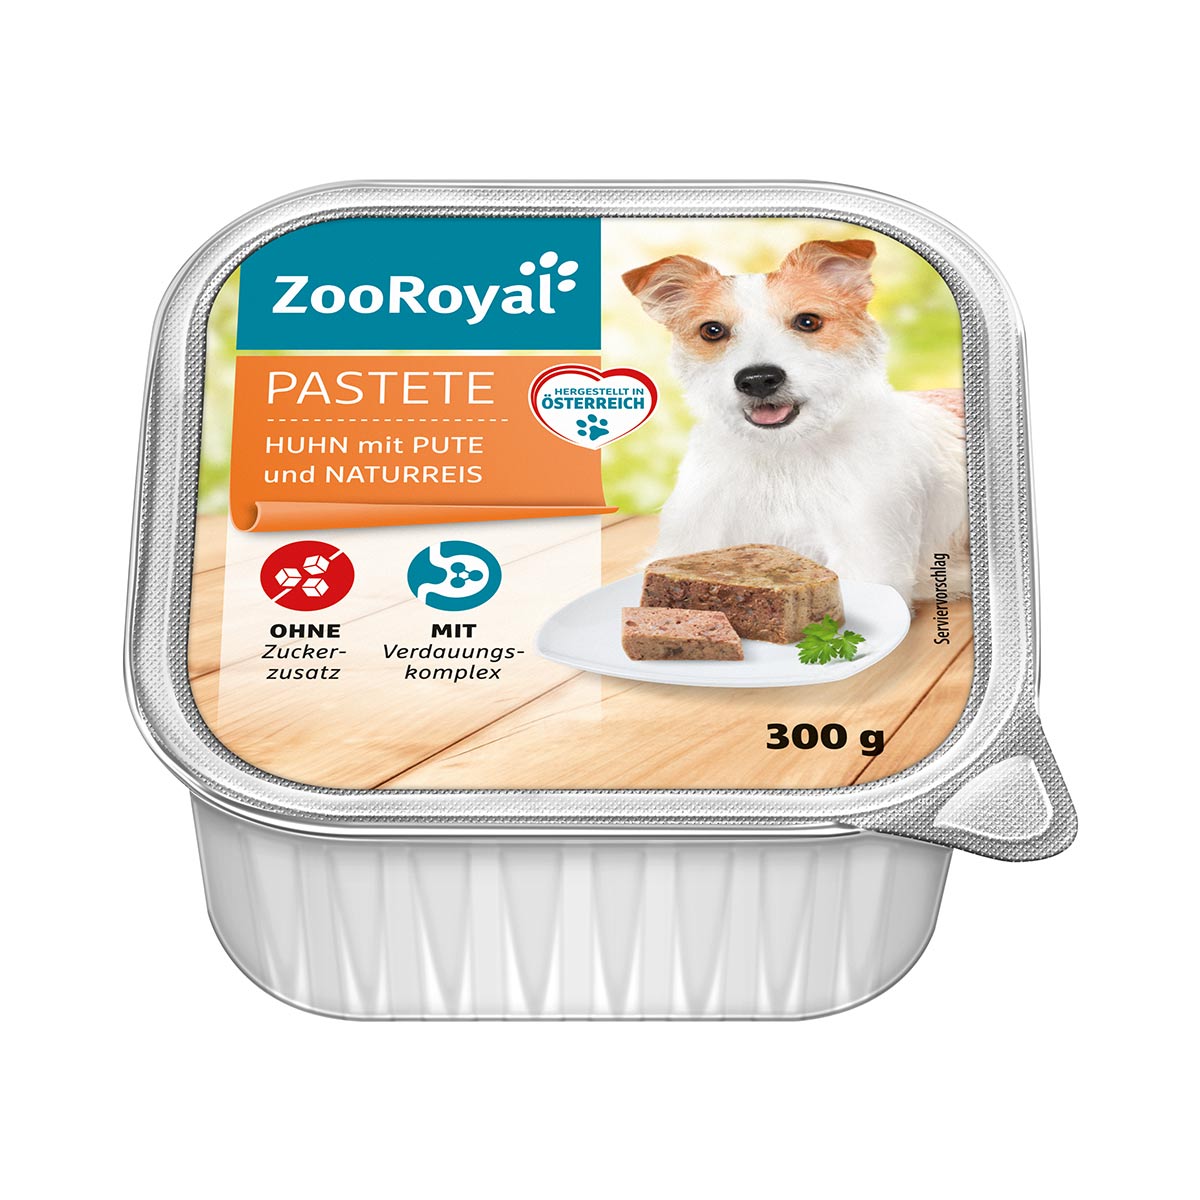 ZooRoyal Pastete Huhn mit Pute und Naturreis 9x300g von ZooRoyal